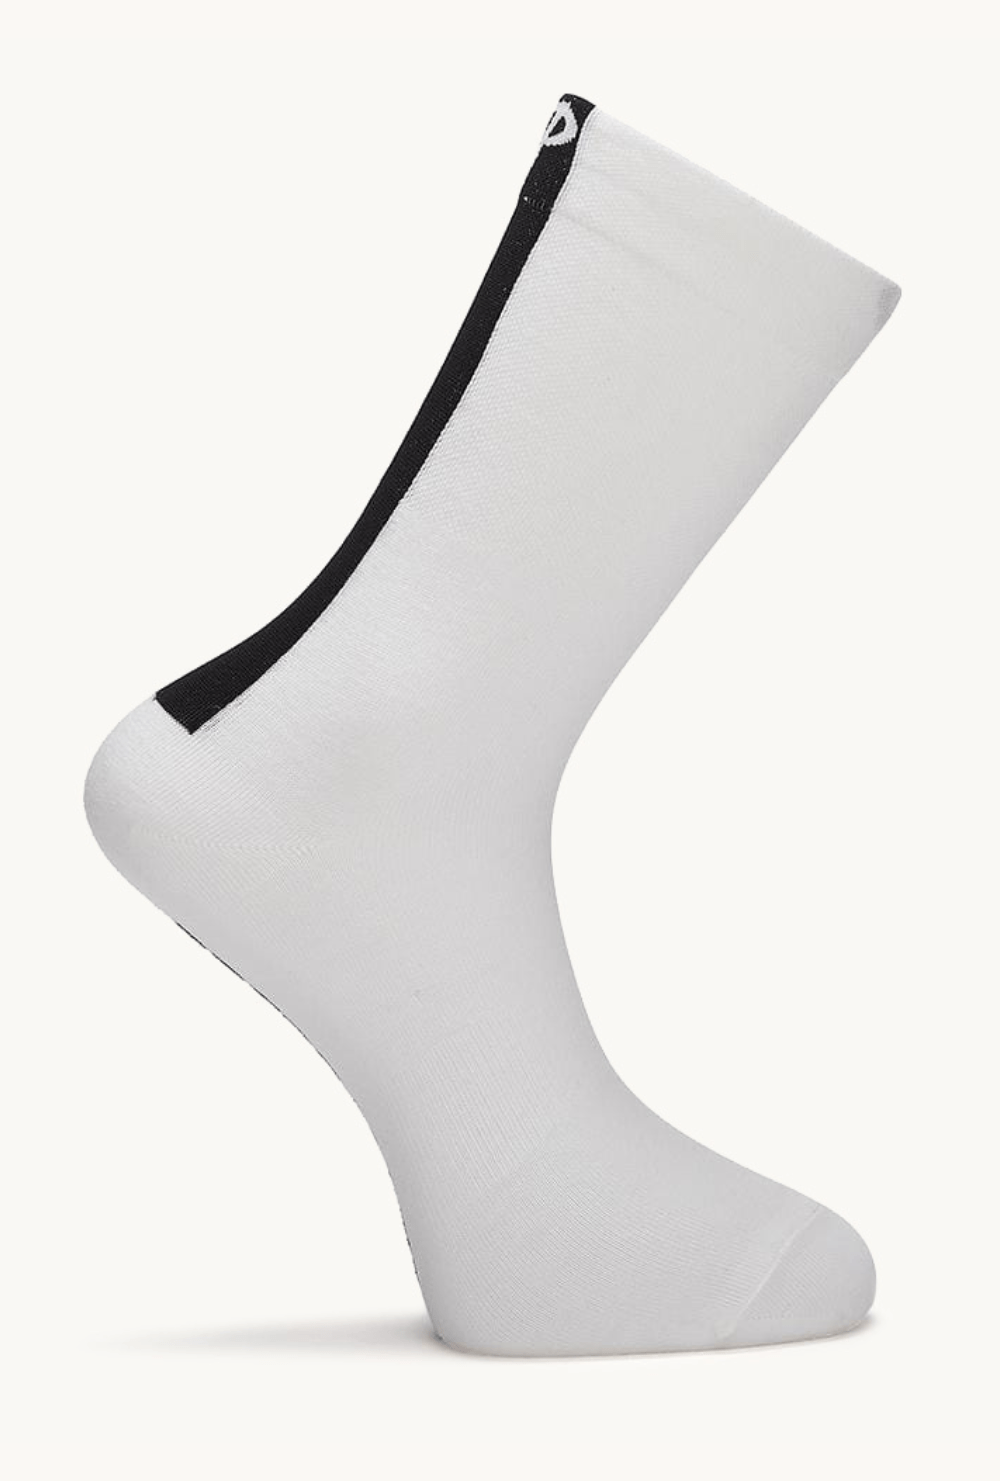 Pcs  Press Hard Here - Socks White  Small / Medium / White